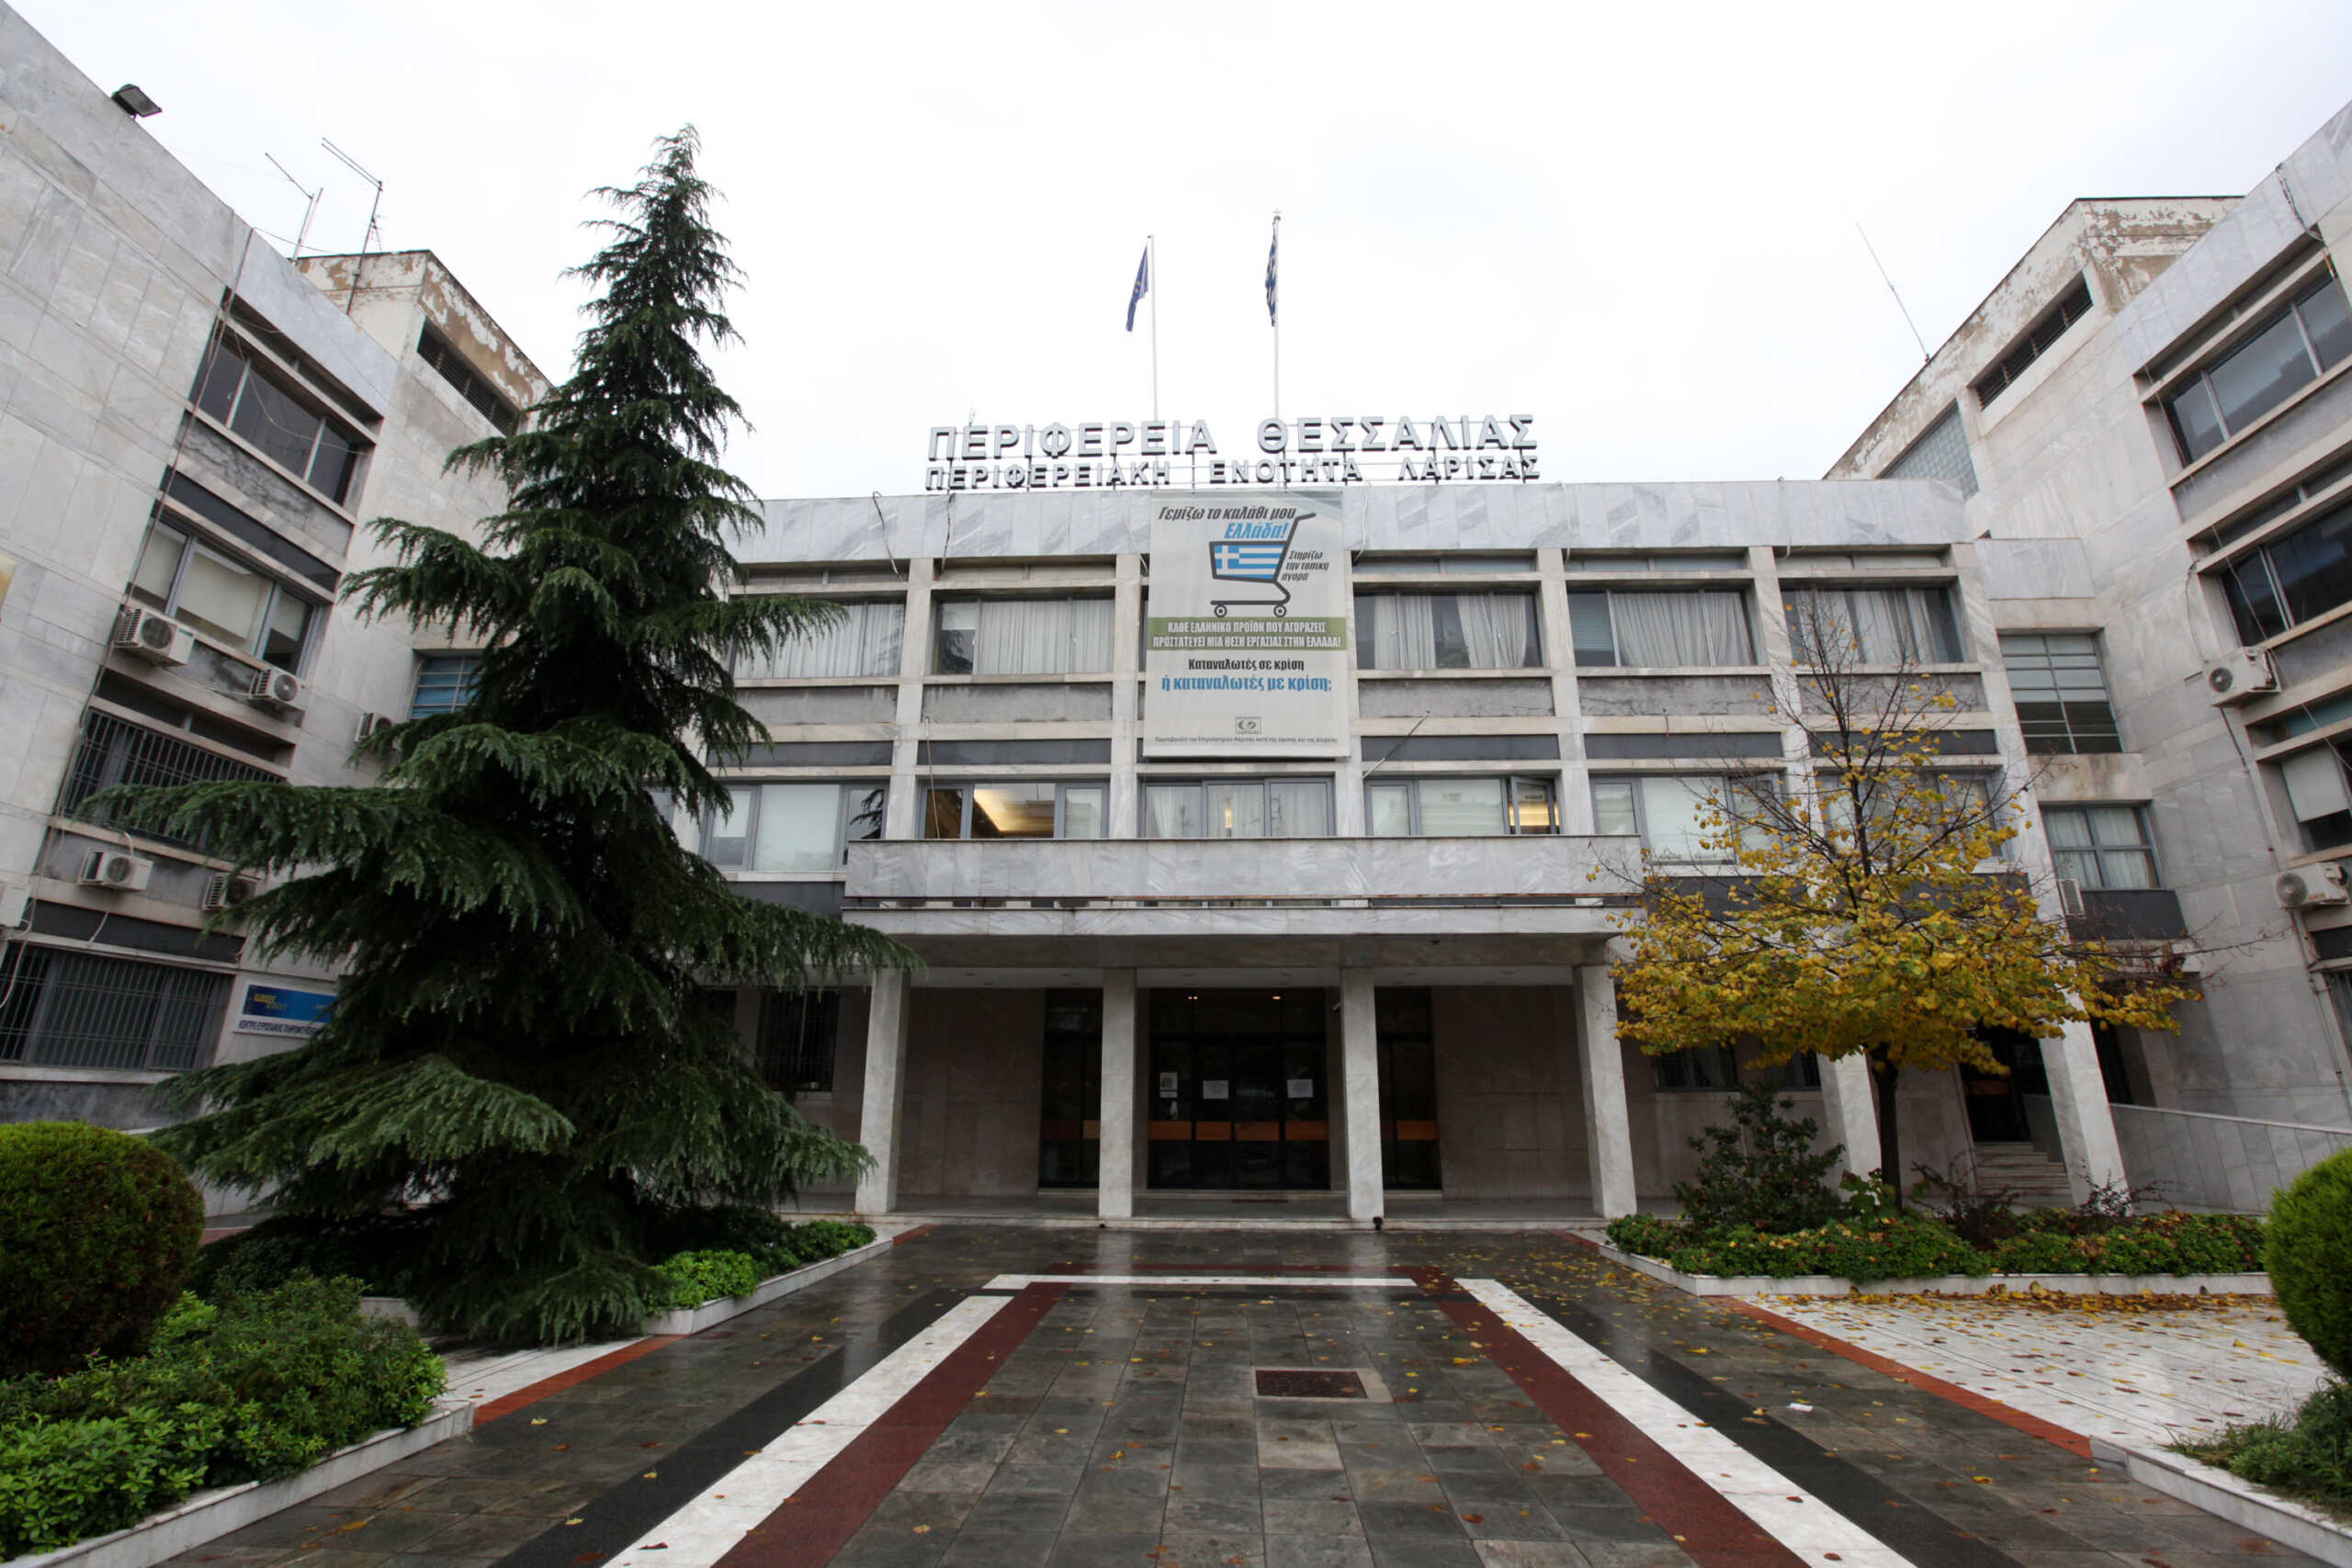 Περιφέρεια Θεσσαλίας: Σε αργία τέθηκαν 6 υπάλληλοι για χρηματισμό